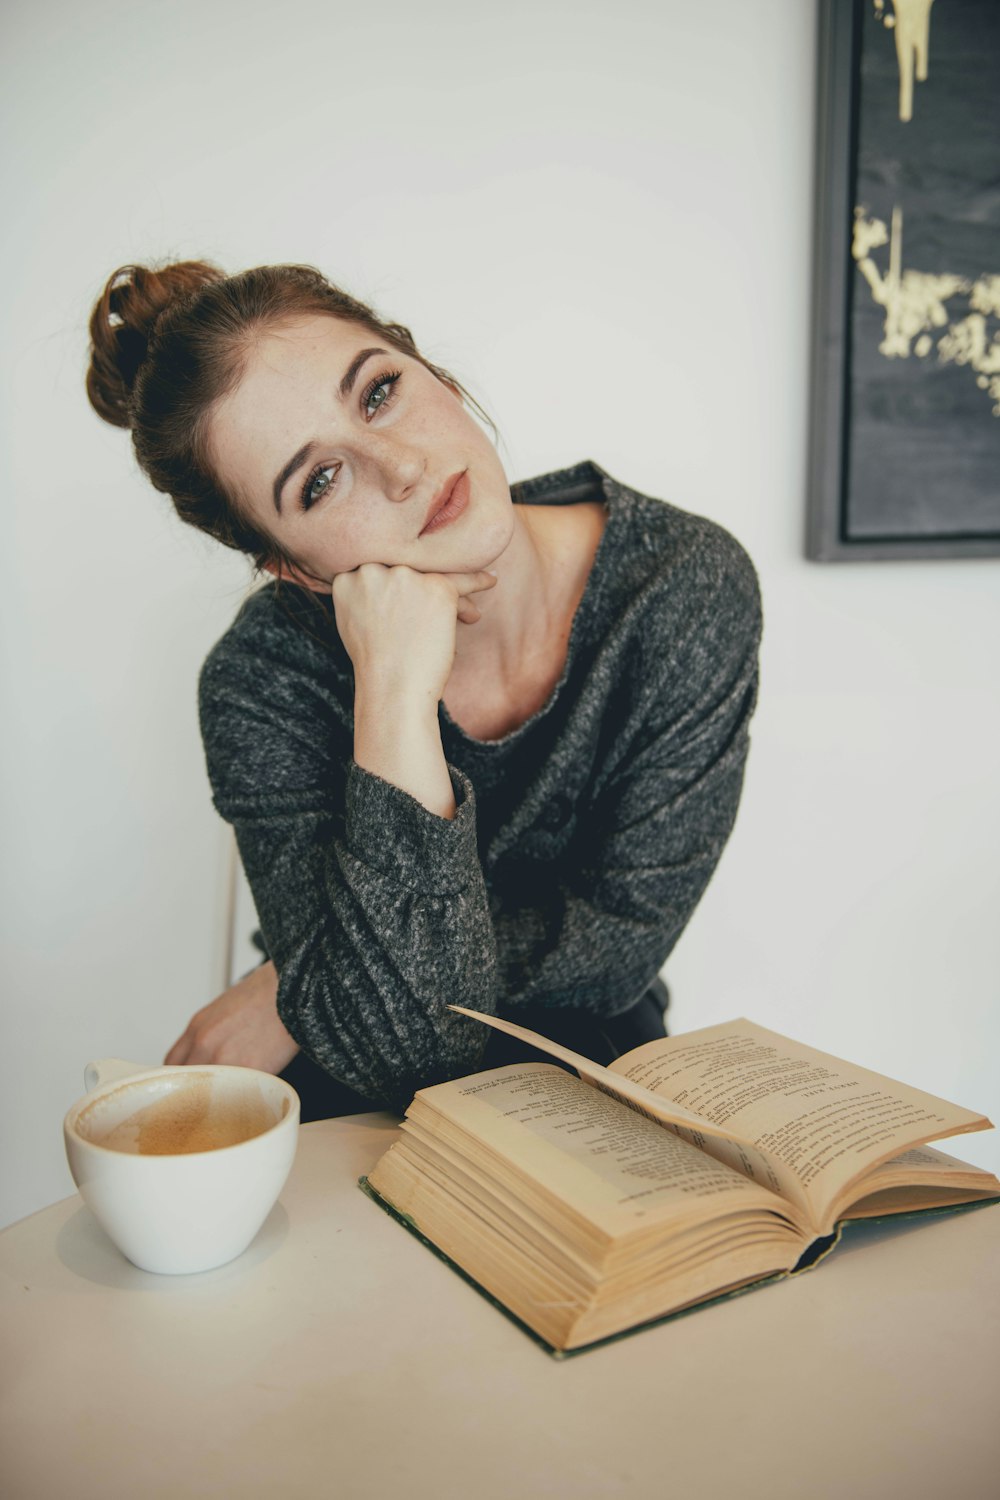 donna dai capelli castani in maglione nero vicino al libro marrone